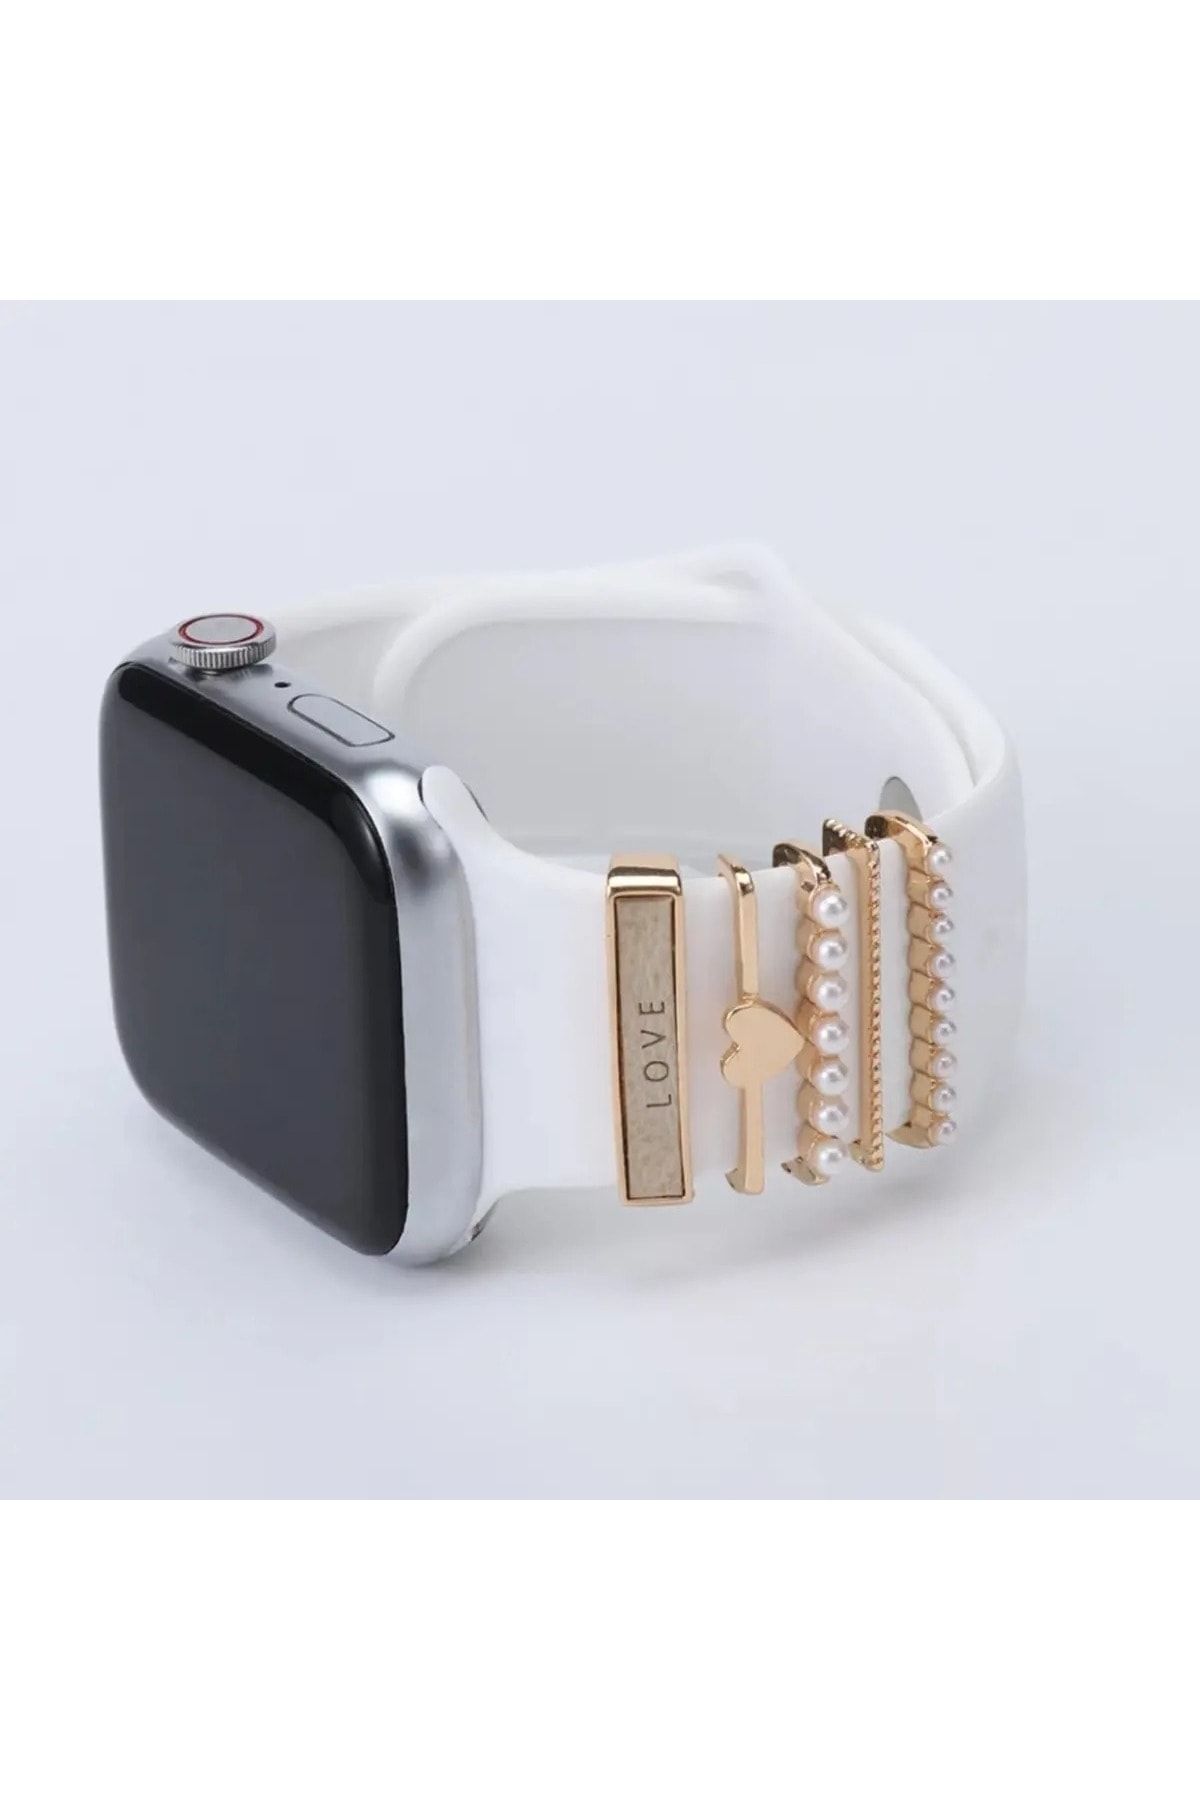 NOREM Love Figürlü Apple Watch Uyumlu Akıllı Saat Kordon Süsü / Charm Seti